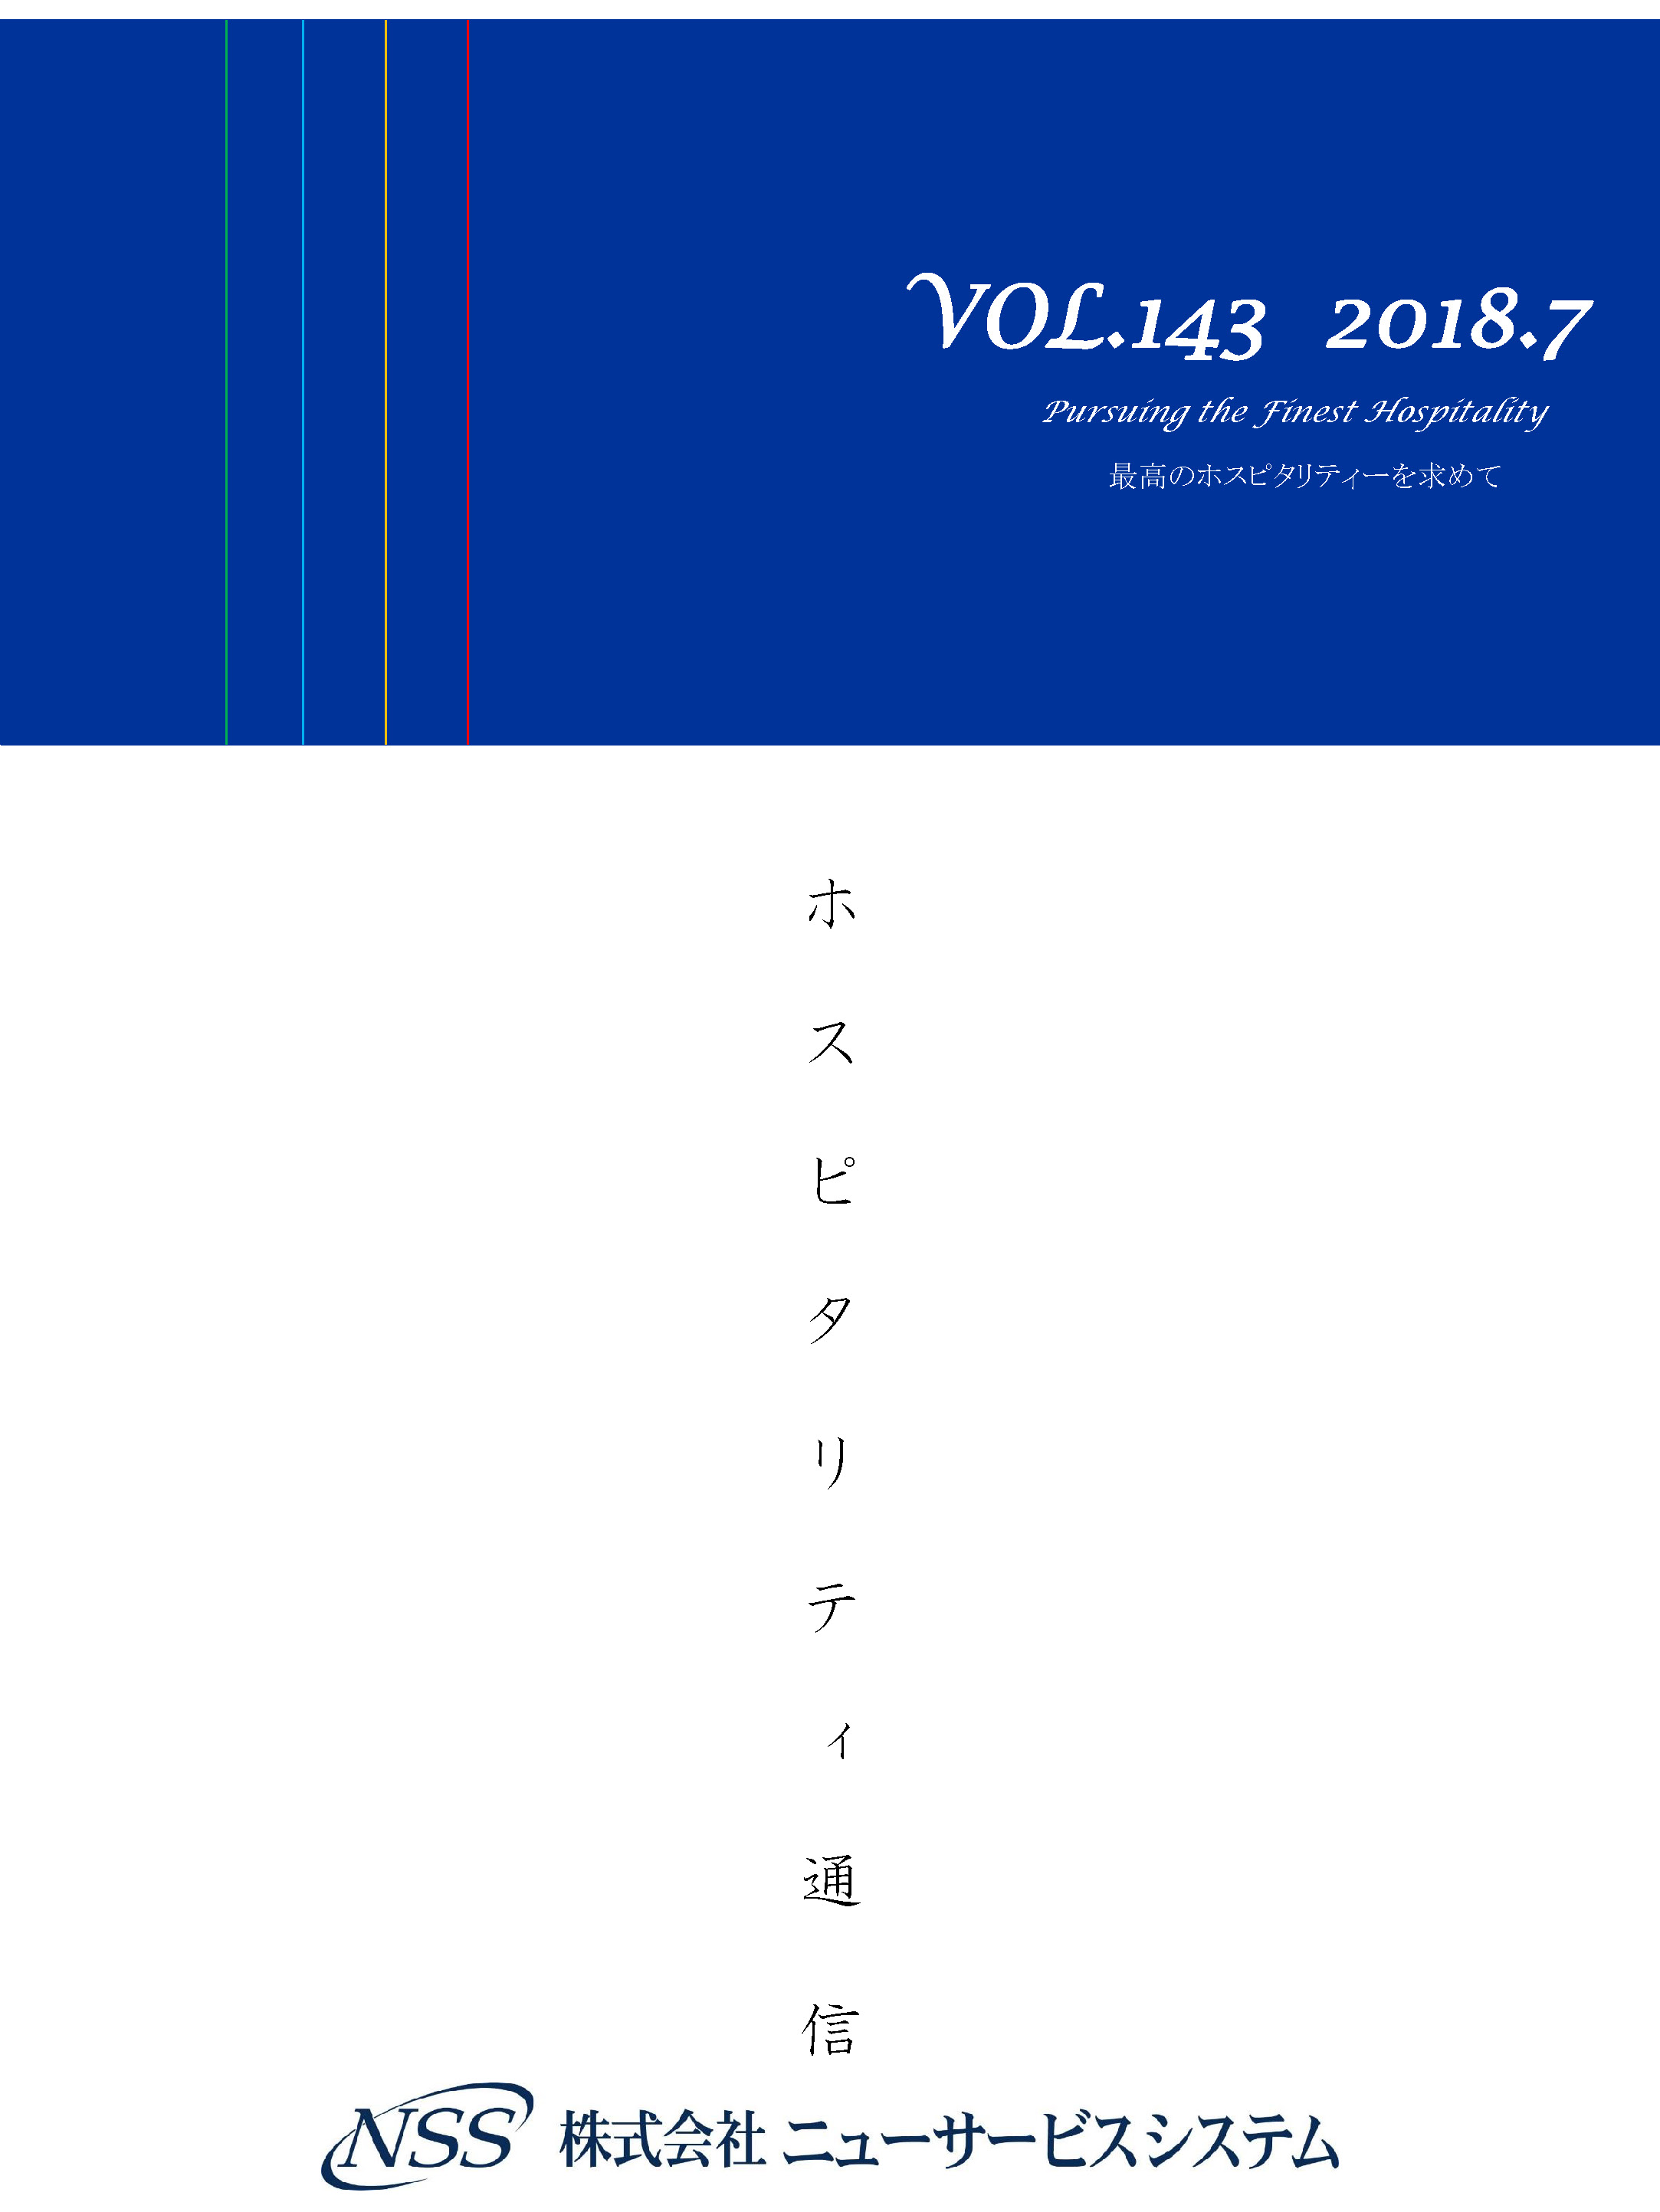 ホスピタリティ通信 vol.143